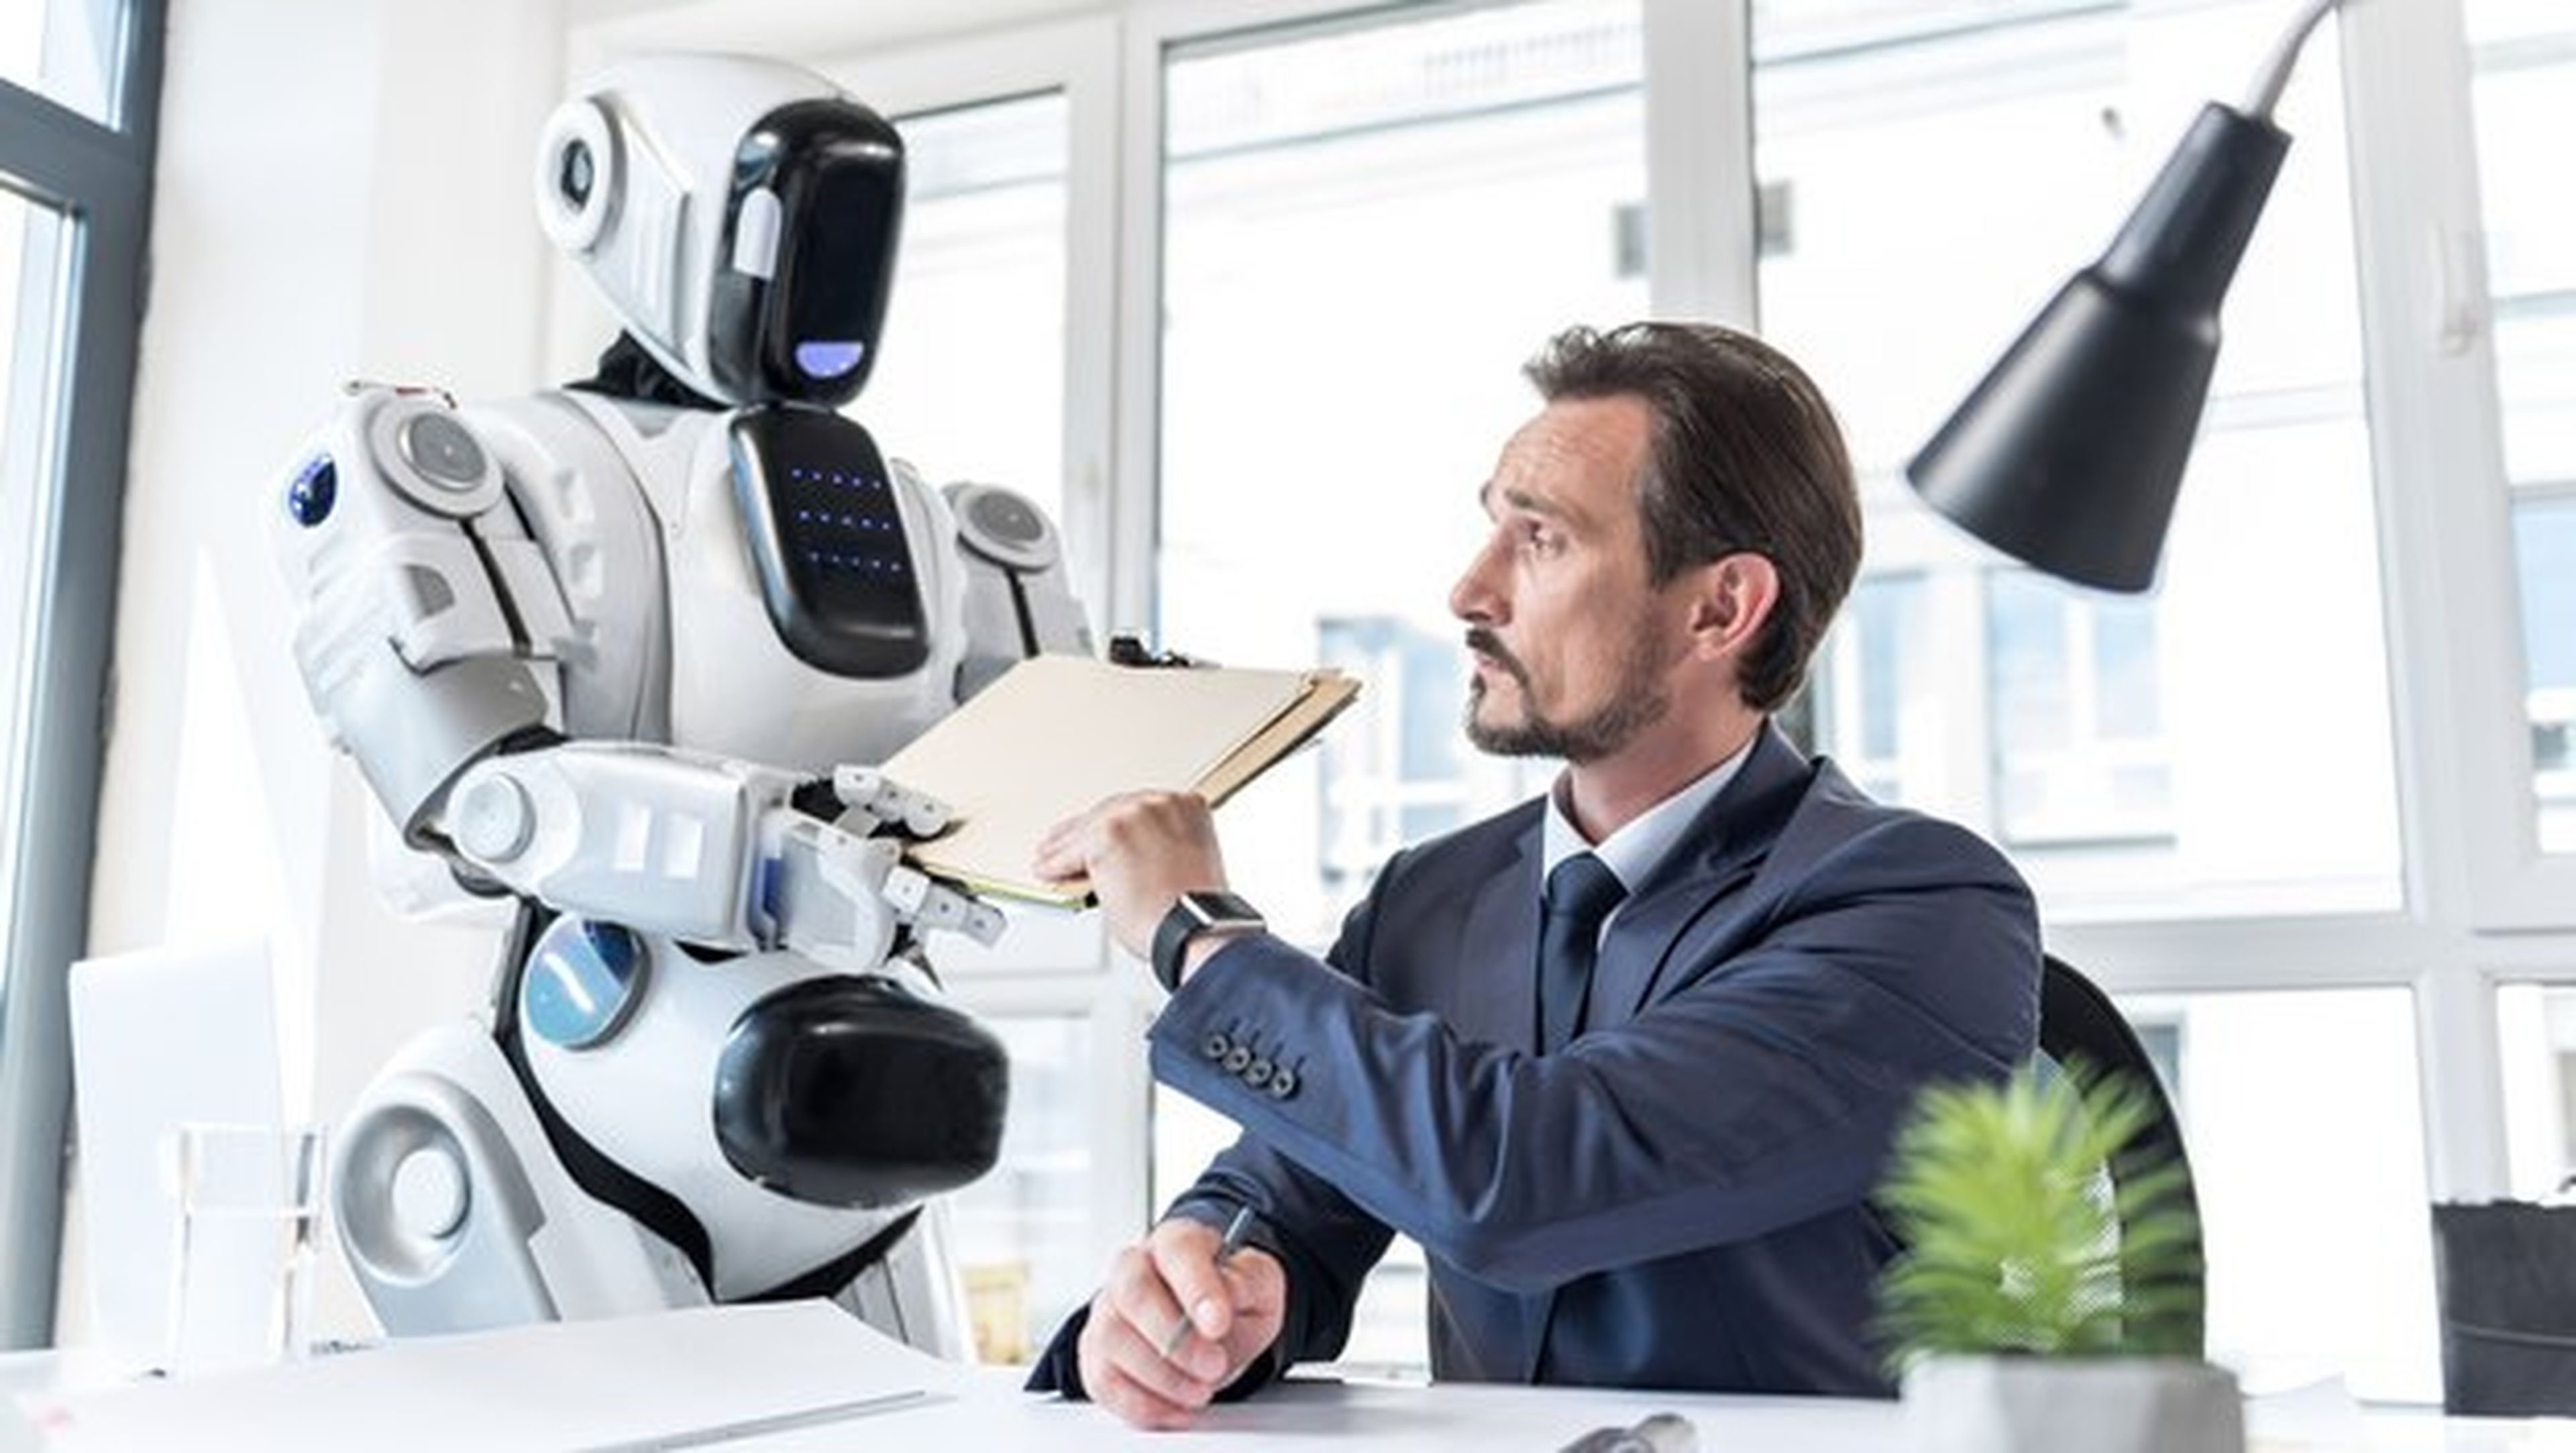 800 millones de trabajadores serán sustituidos por robots en 2030